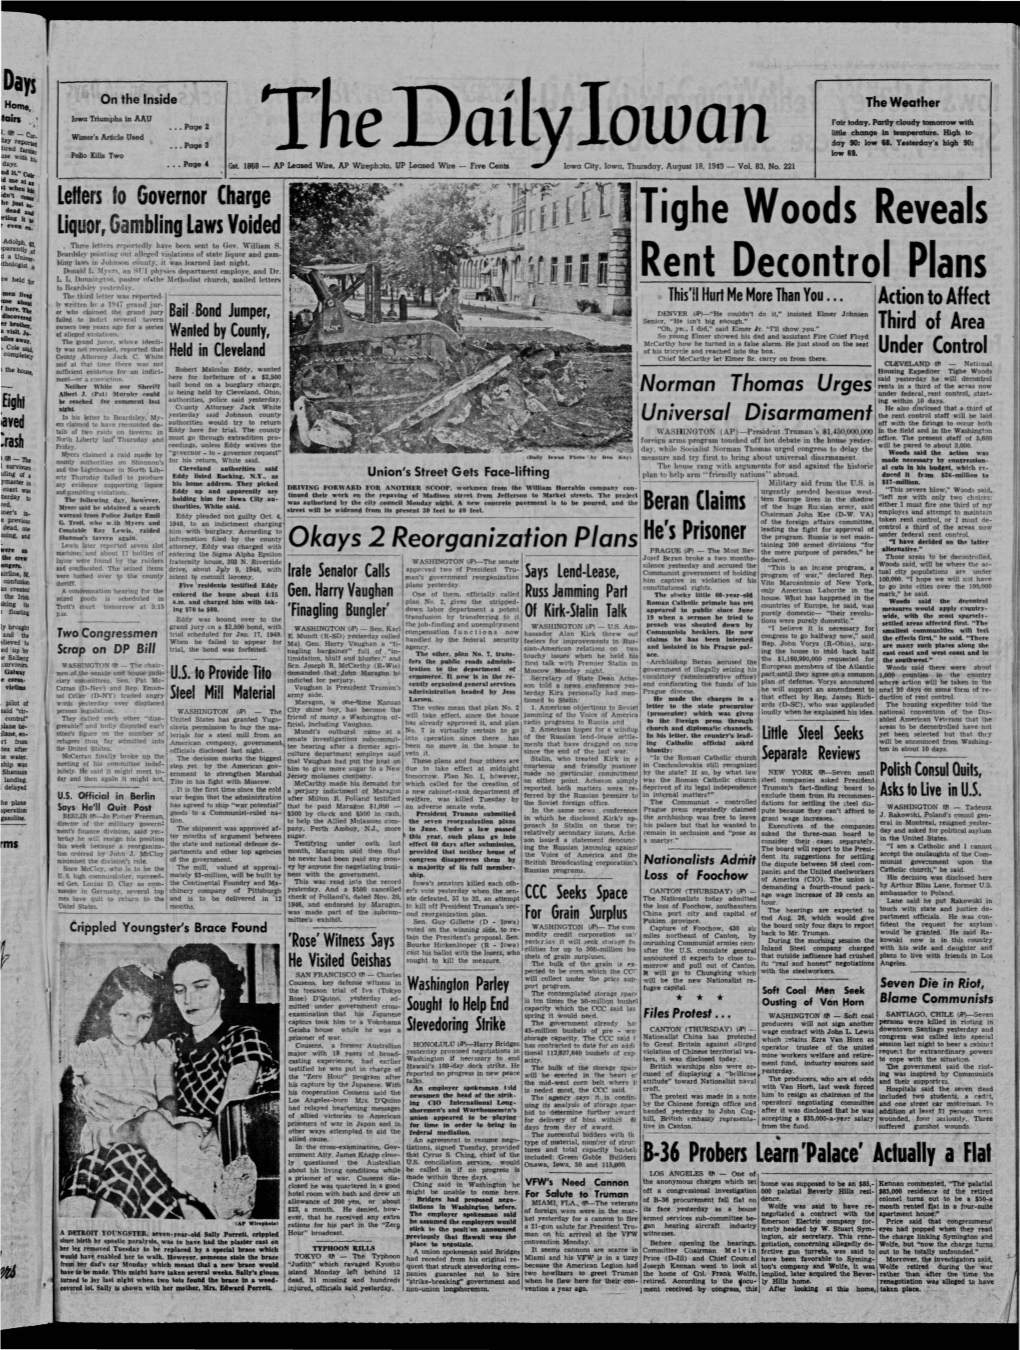 Daily Iowan (Iowa City, Iowa), 1949-08-18